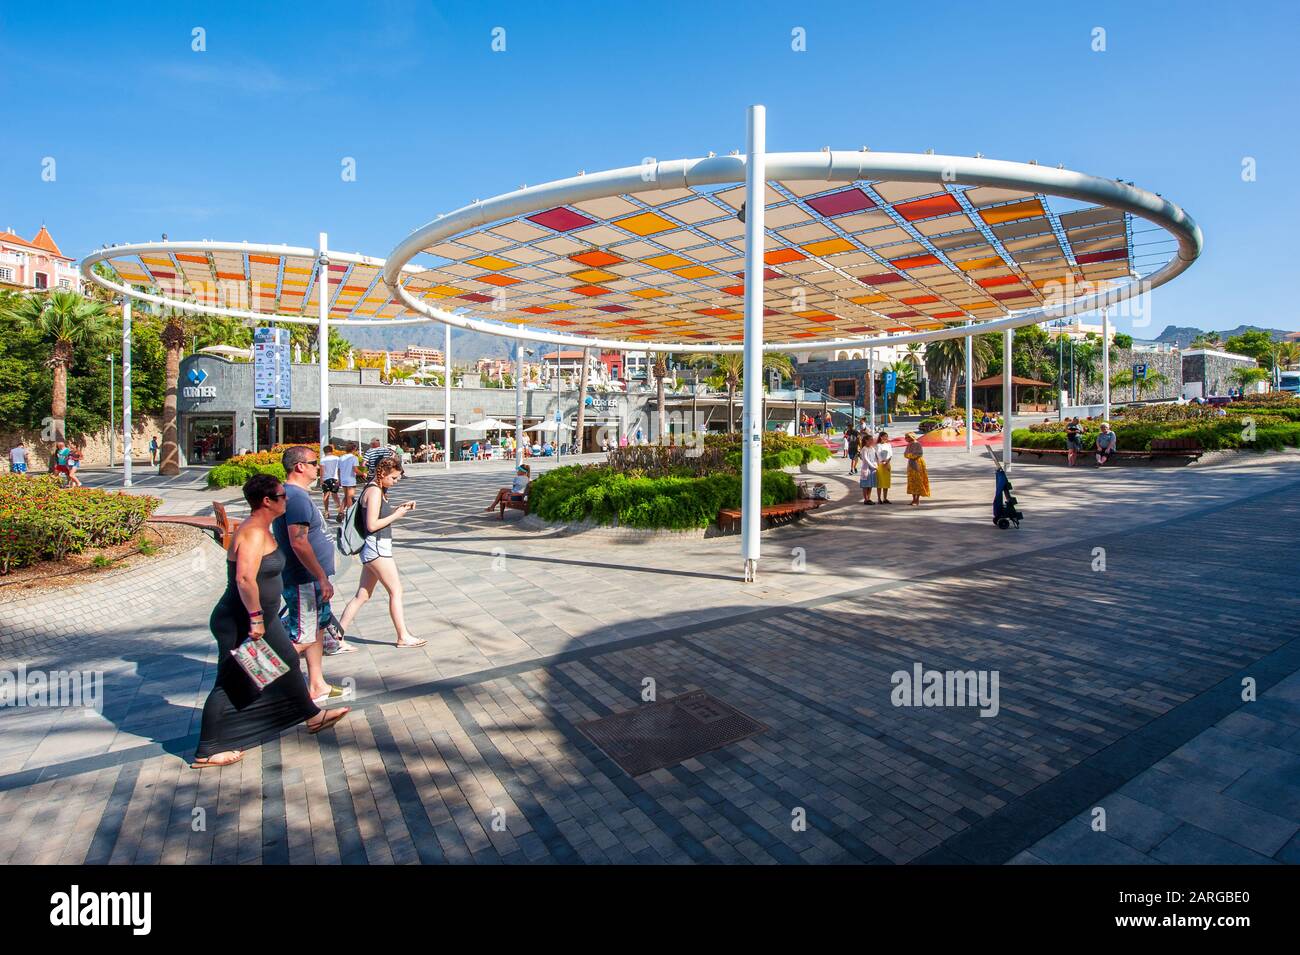 KANARENINSEL TENERA, SPANIEN - 27 DEC, 2019: Touristen laufen auf der plaza Duque. Es ist ein Boulevard mit Geschäften in der Nähe des beliebten Strandes Playa El Duqu Stockfoto